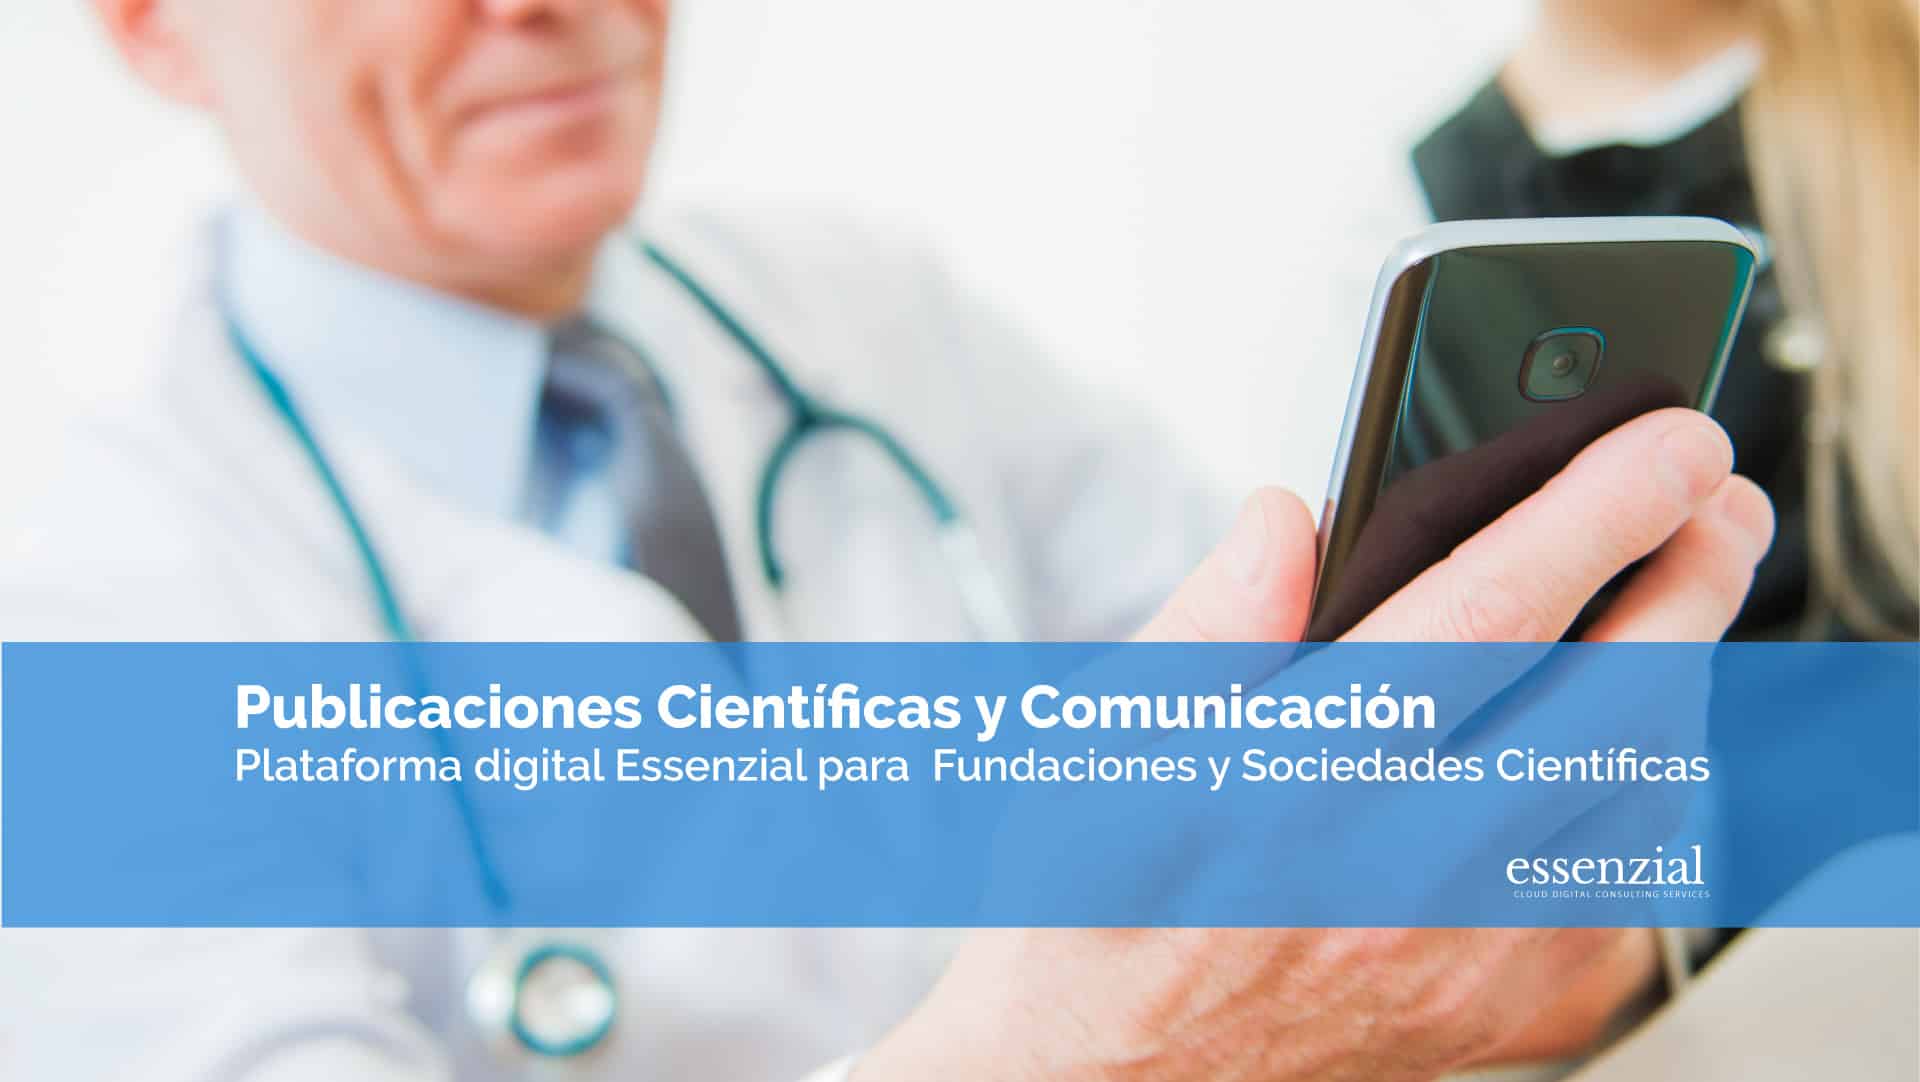 Essenzial-video-Plataforma-Fundaciones-publicacaiones-cientificas-y-comunicacion2